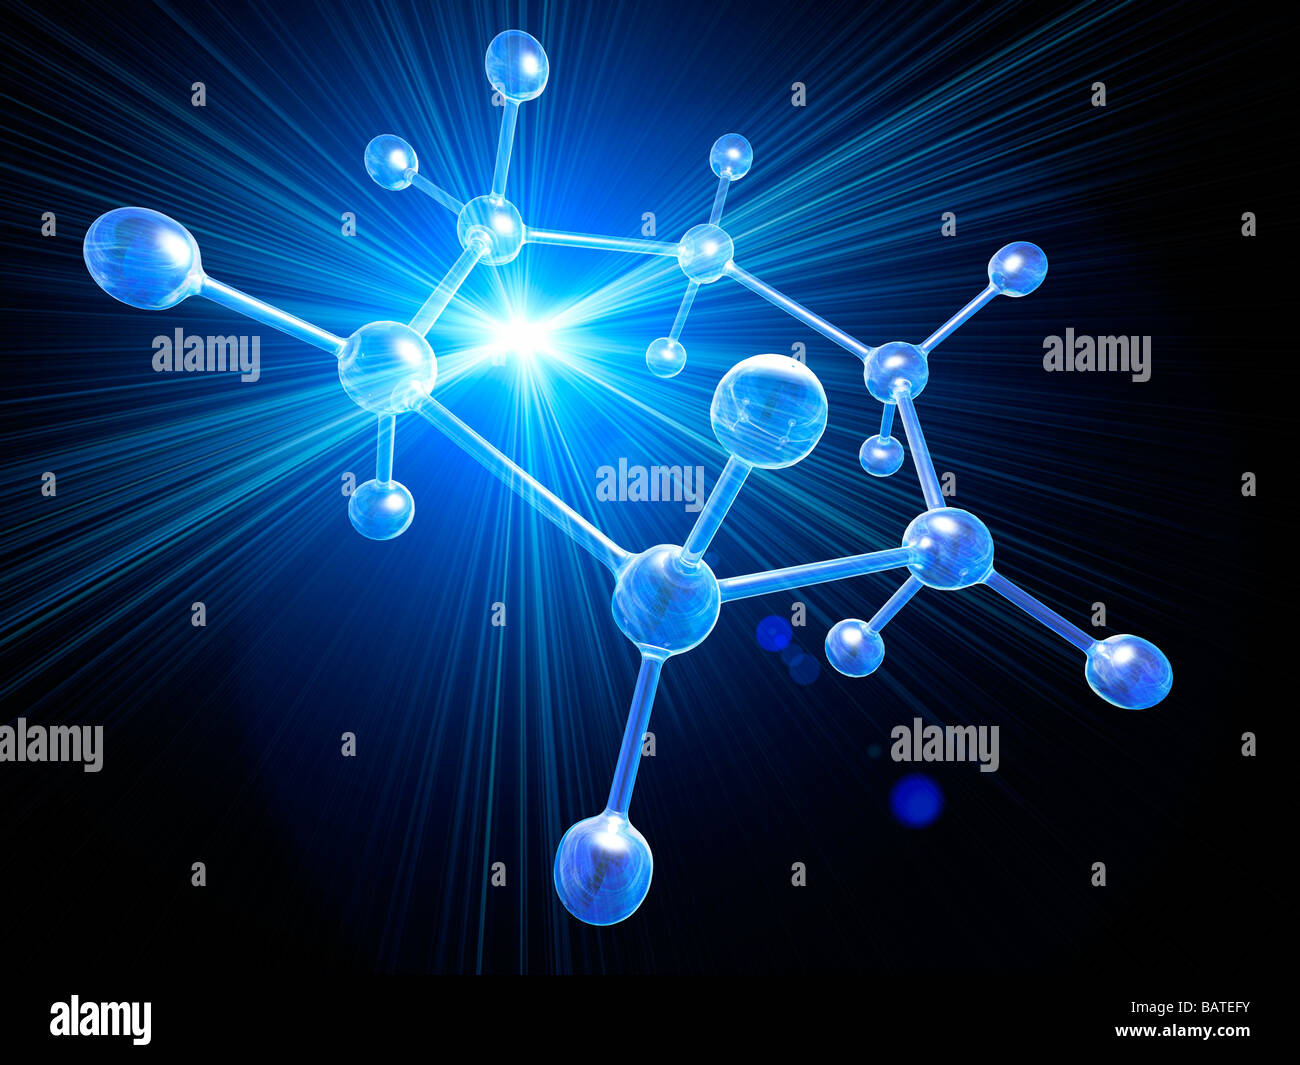 Struttura Molecolare, concettuale computer grafica. Gli atomi sono mostrati come sfere e i legami tra di essi come aste. Foto Stock